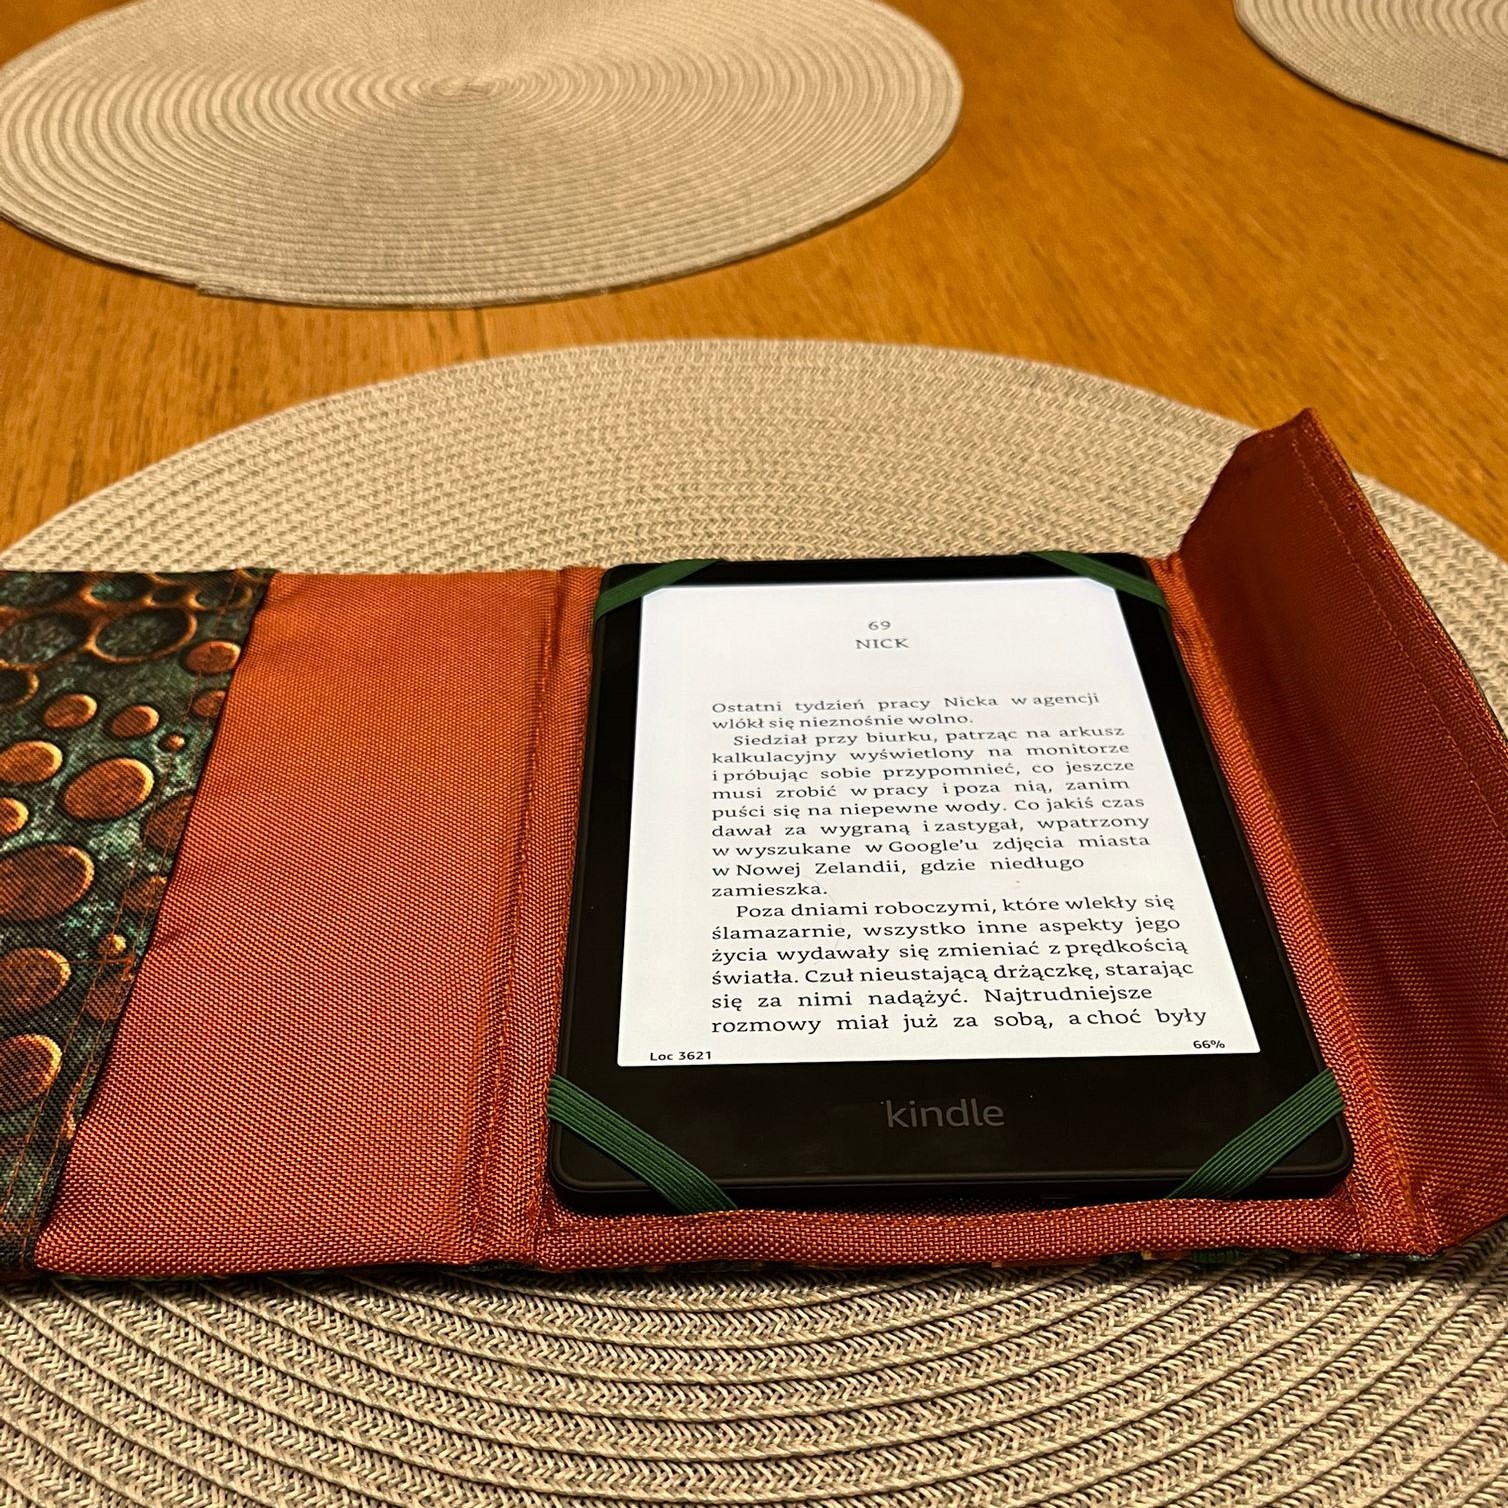 Etui na czytnik Kindle, idealnie dopasowane. Bardzo dtsbilnnie utrzymuje czytnik, uczytwniane, trwałe.